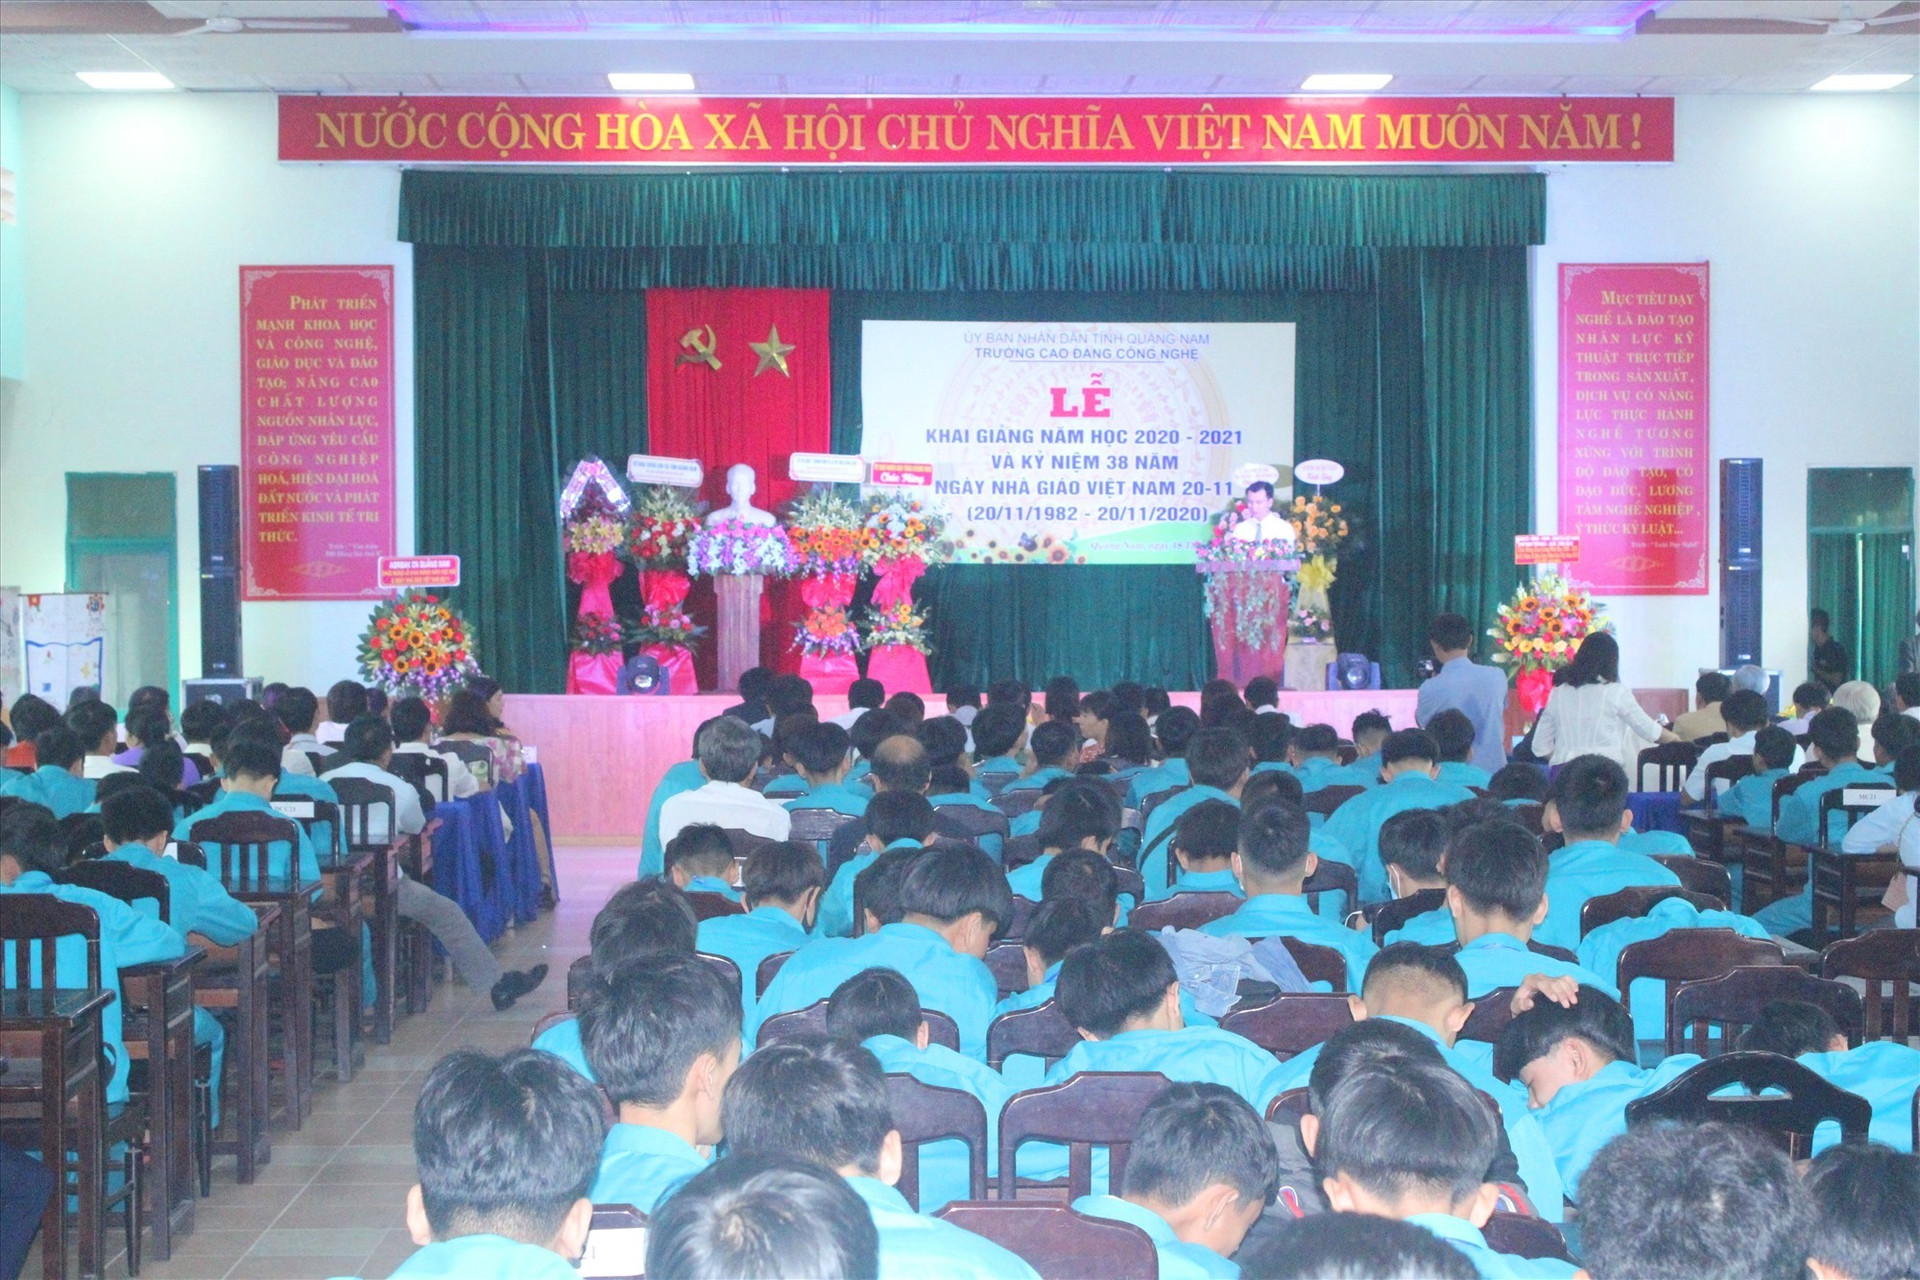 Lễ khai giảng năm học mới 2020 - 2021 tại Trường Cao đẳng Công nghệ Quảng Nam. Ảnh: D.L